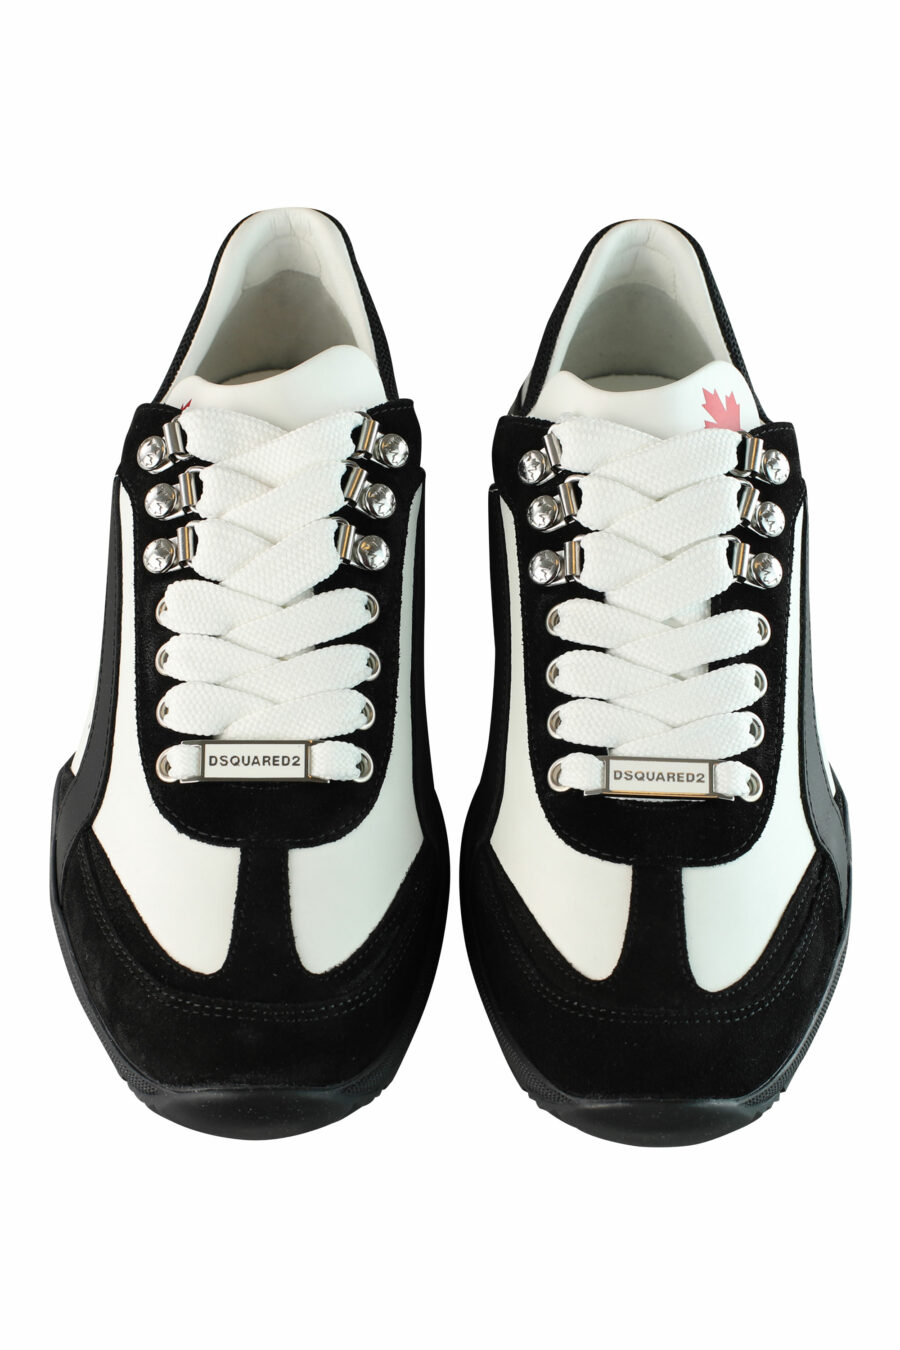 Zapatillas bicolor blancas y negras "original legend" - IMG 1456